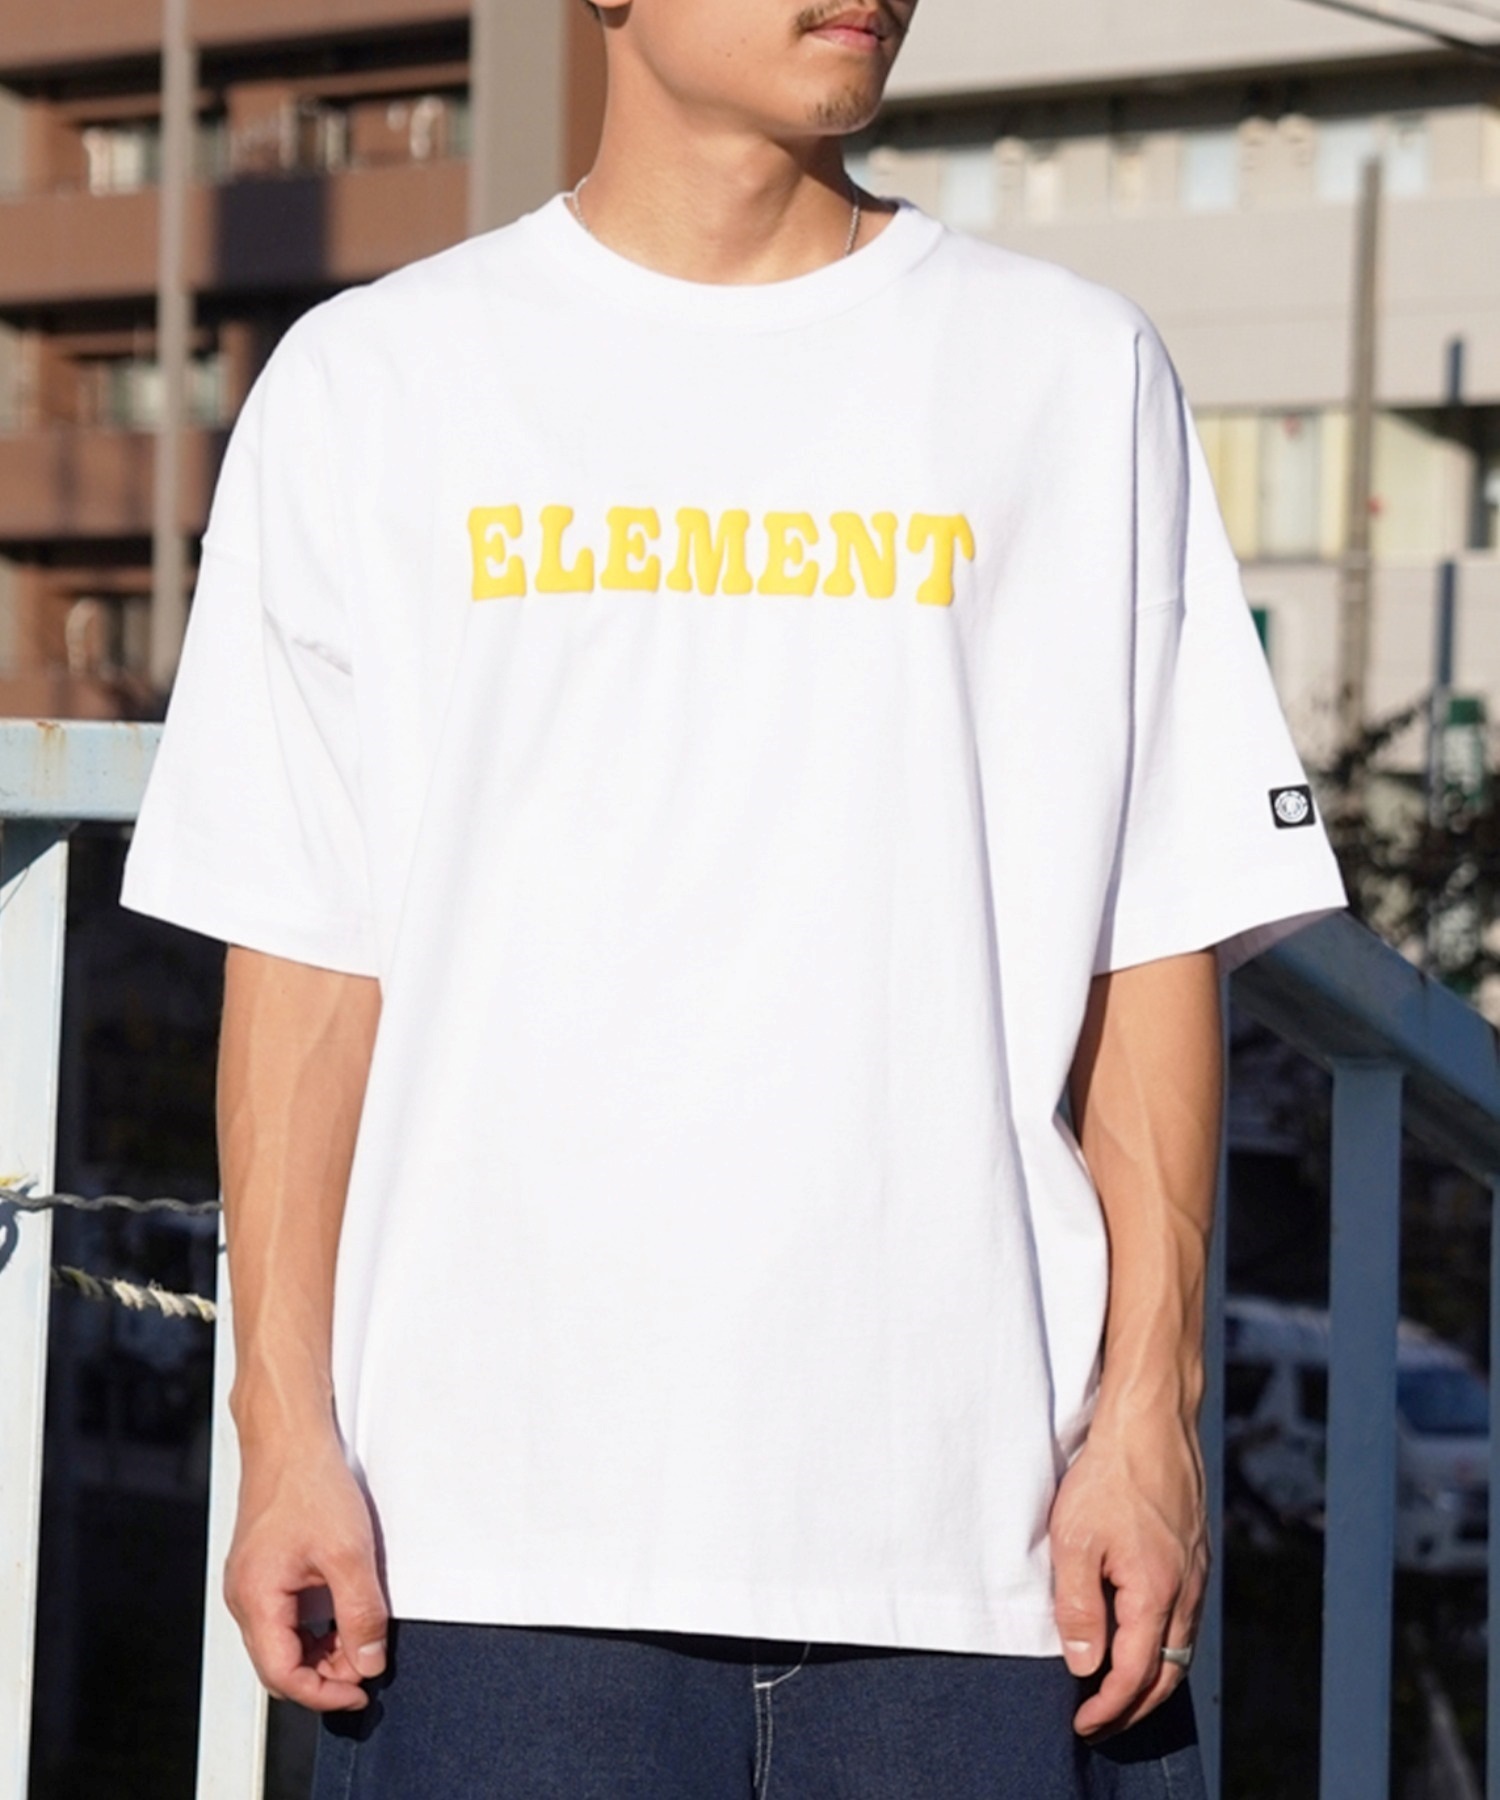 【マトメガイ対象】ELEMENT エレメント メンズ 半袖 Tシャツ バックプリント オーバーサイズ クルーネック アーチロゴ フラワーモチーフ BE021-240(FBK-M)